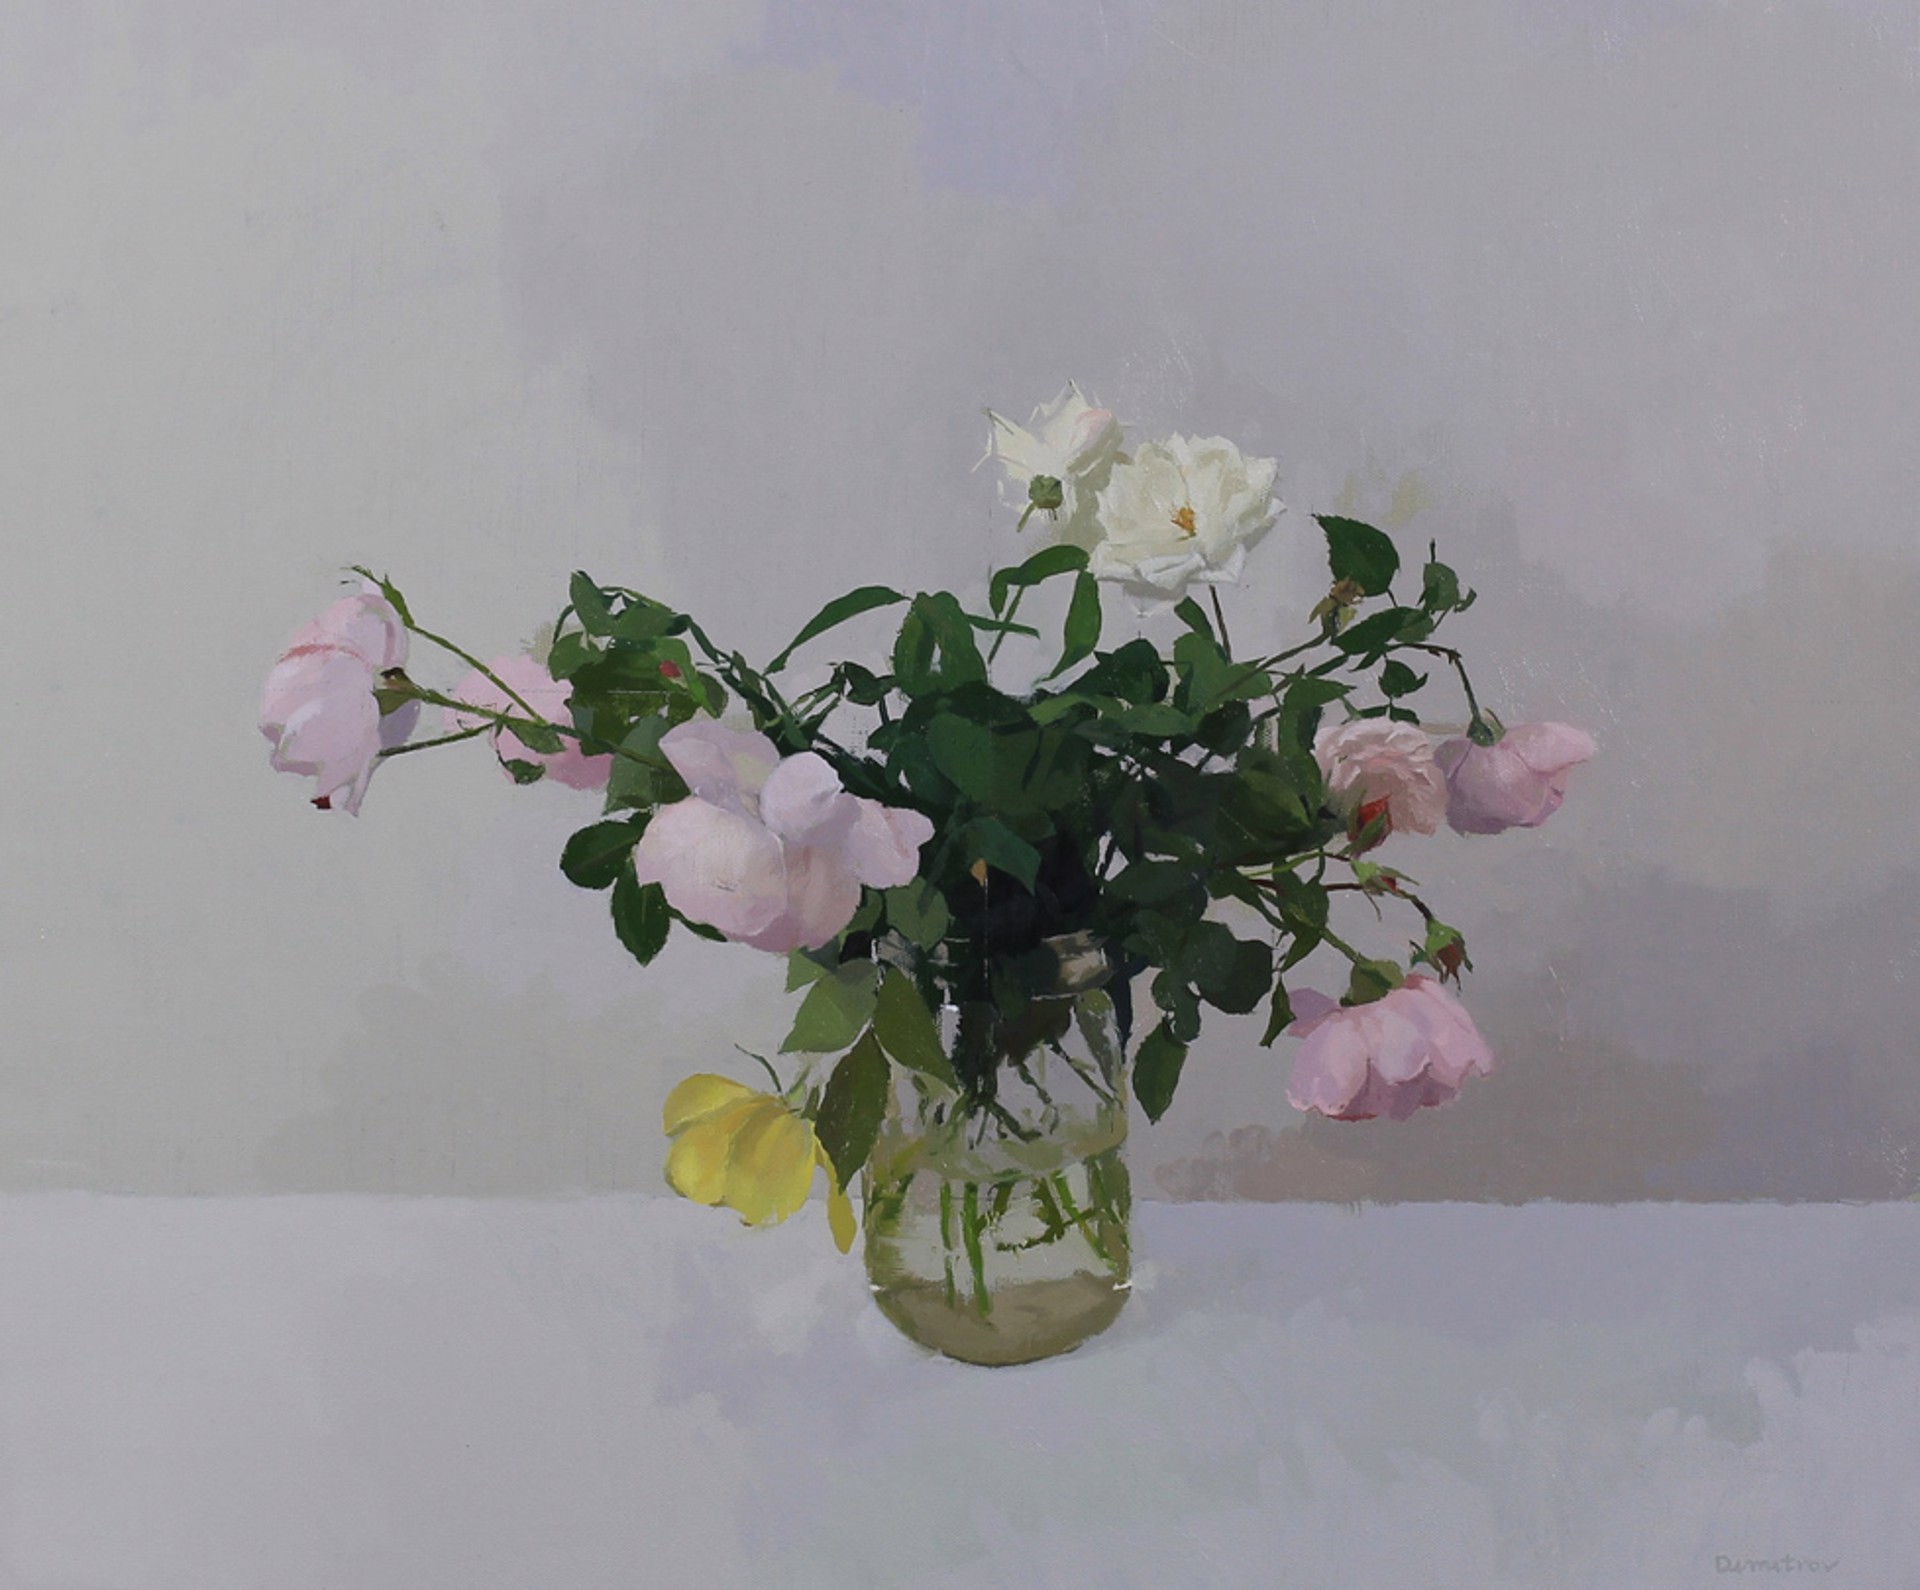 Garden Roses 2 by Martin Dimitrov